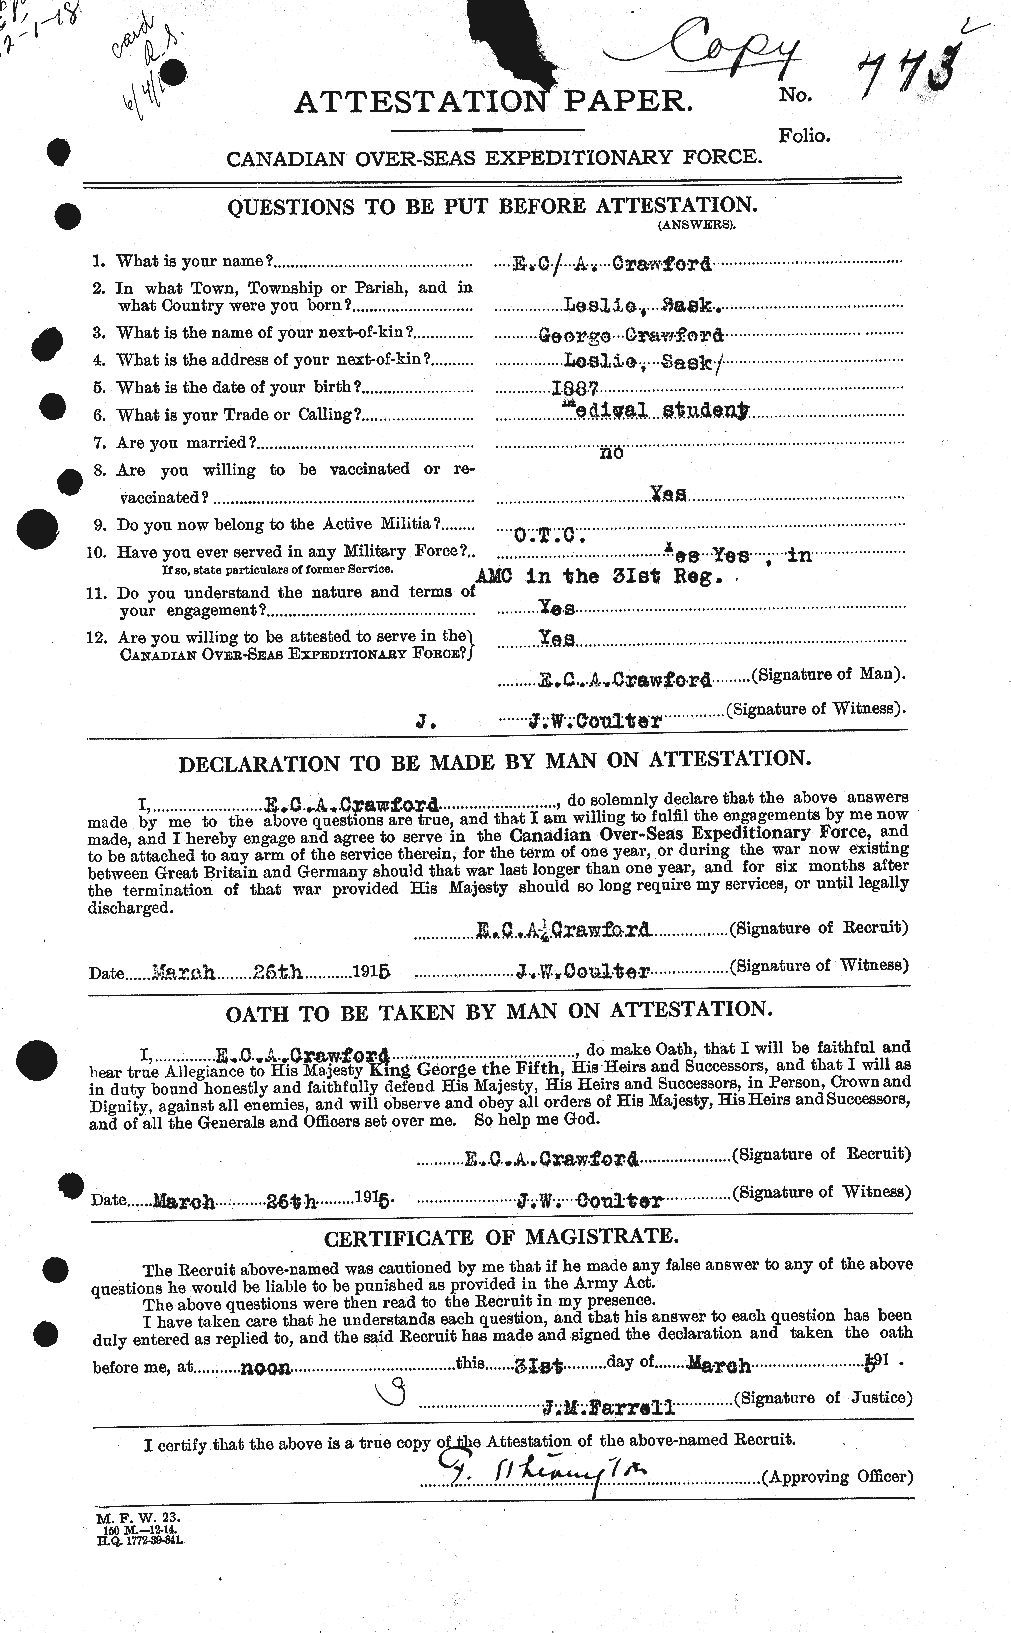 Dossiers du Personnel de la Première Guerre mondiale - CEC 060810a